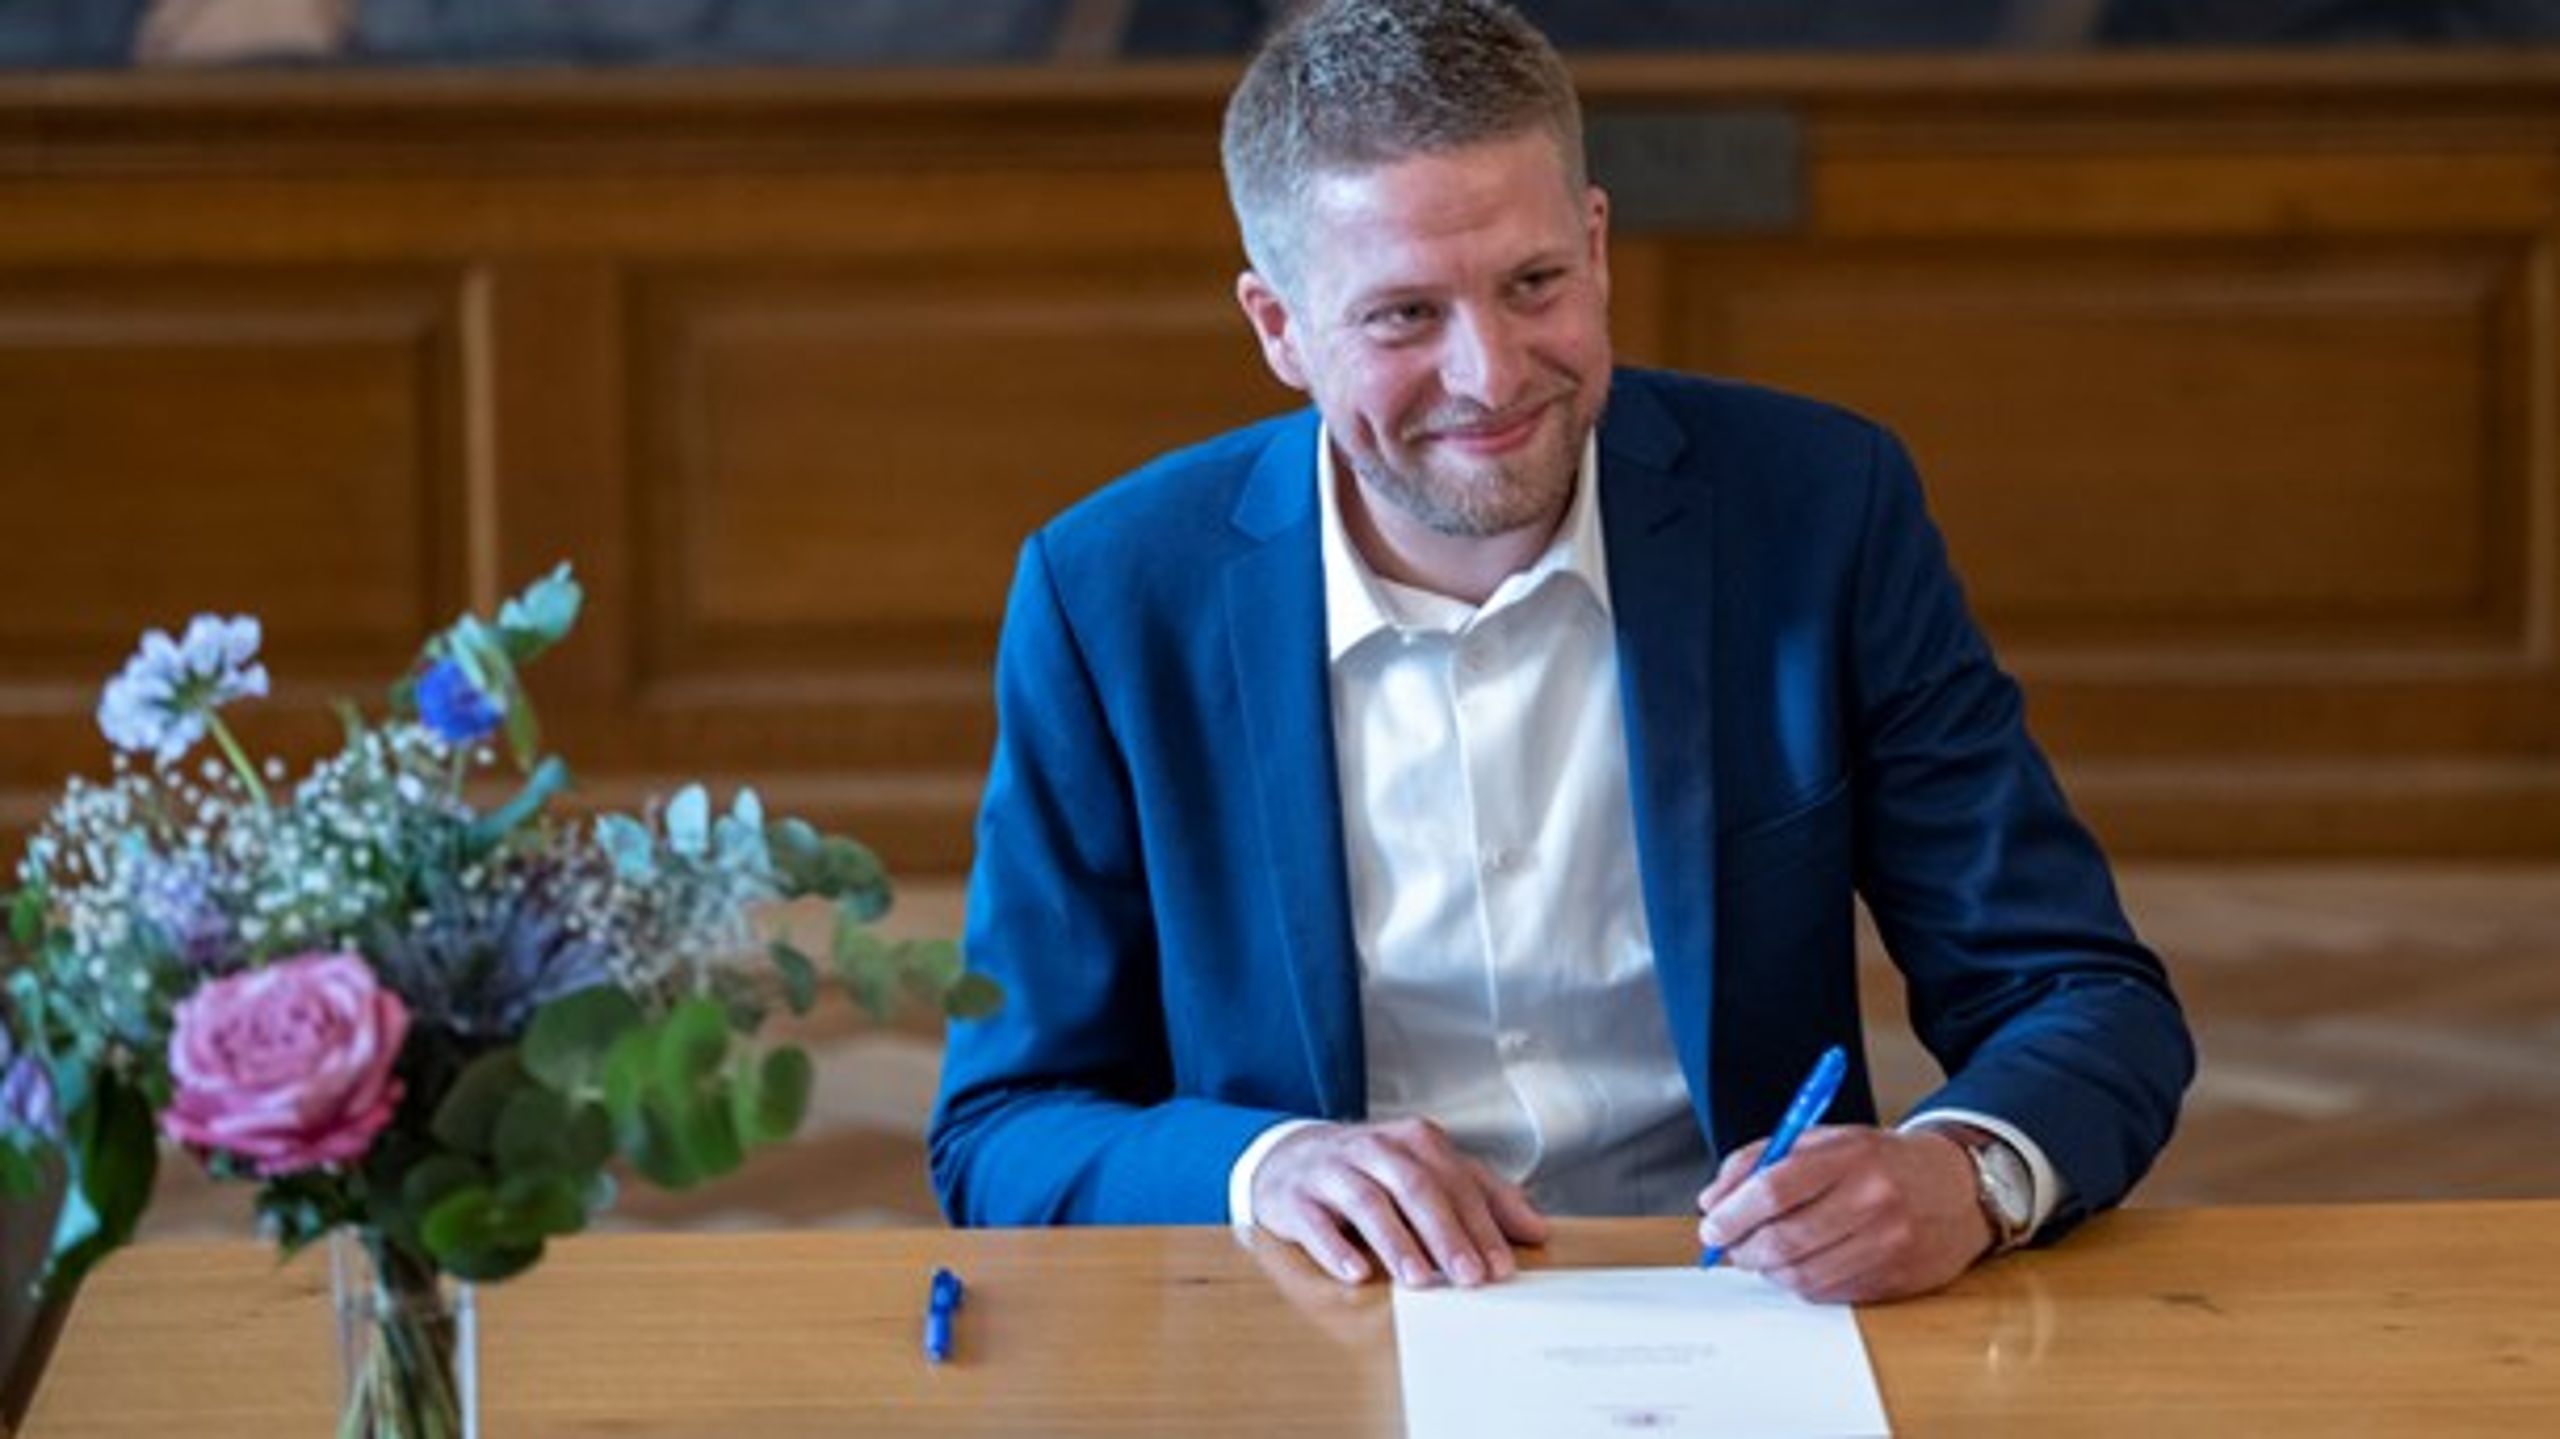 Socialdemokratiets uddannelses- og forskningsordfører Kasper Sand Kjær er en uddannelsespolitisk sværvægter, trods den unge alder.